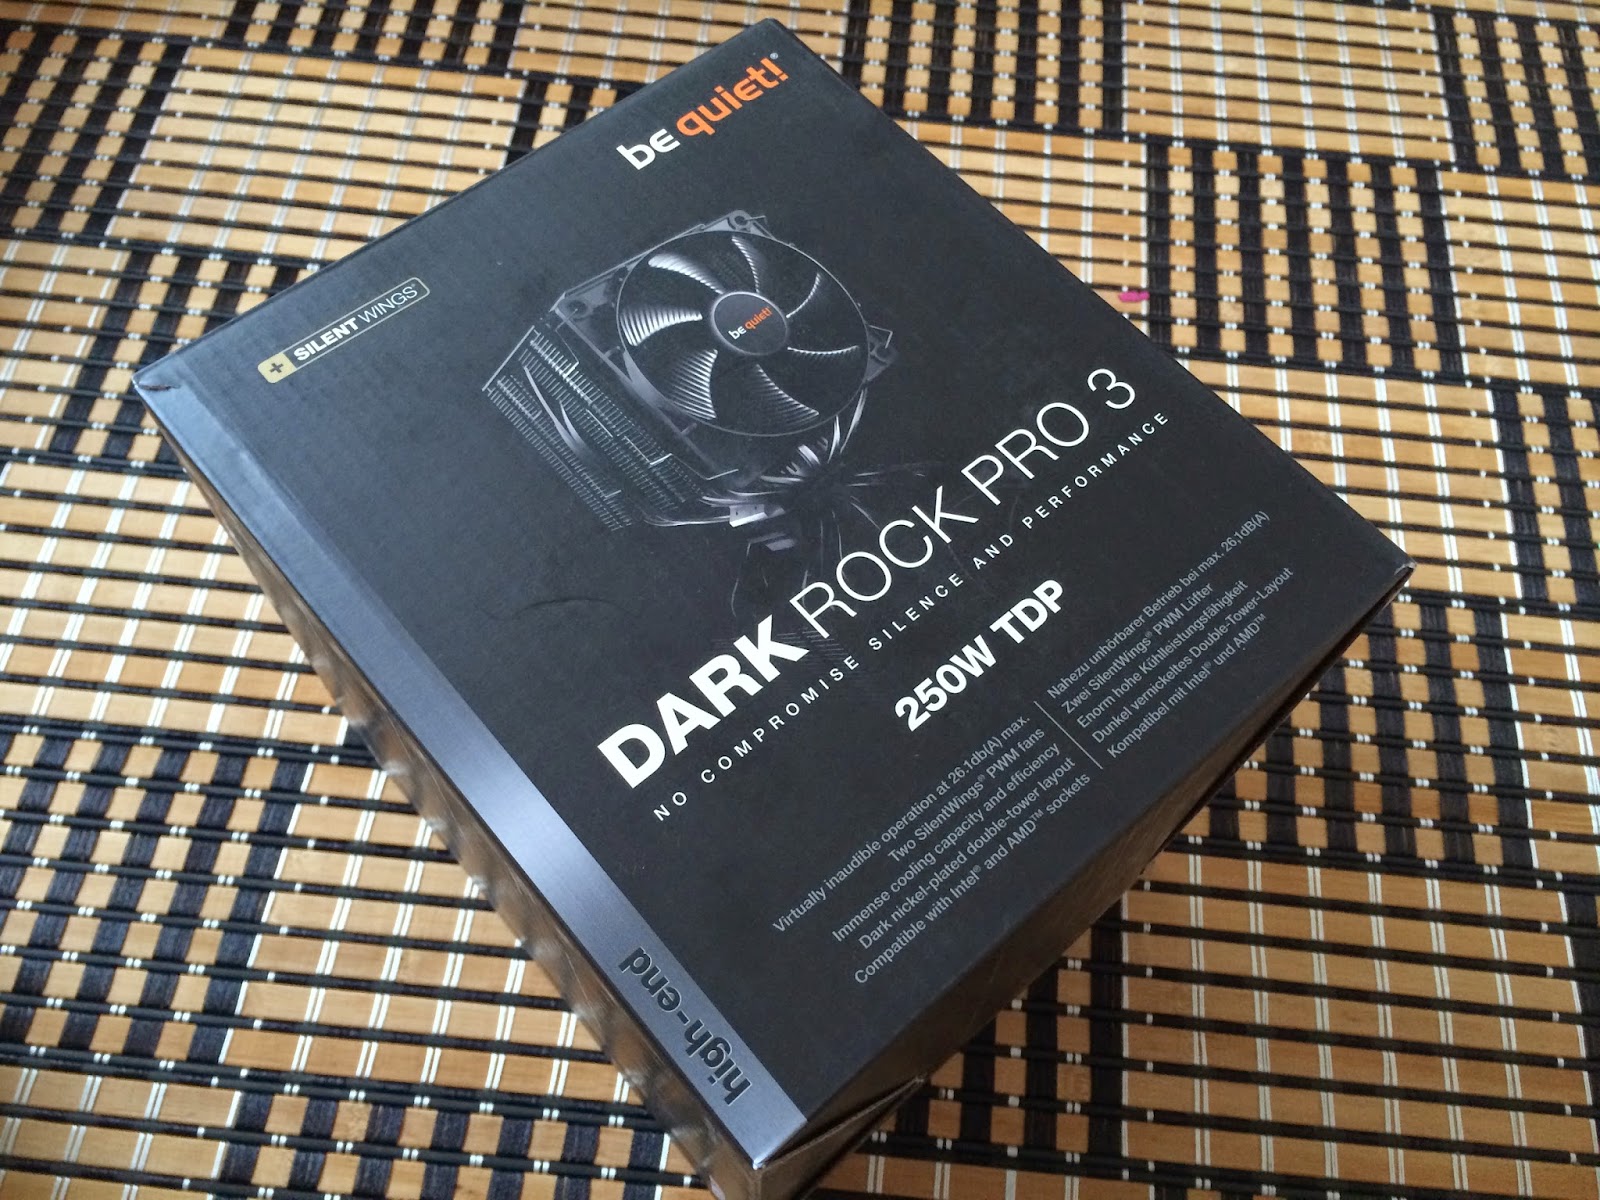 Unboxing & Review: be quiet! Dark Rock Pro 3 2